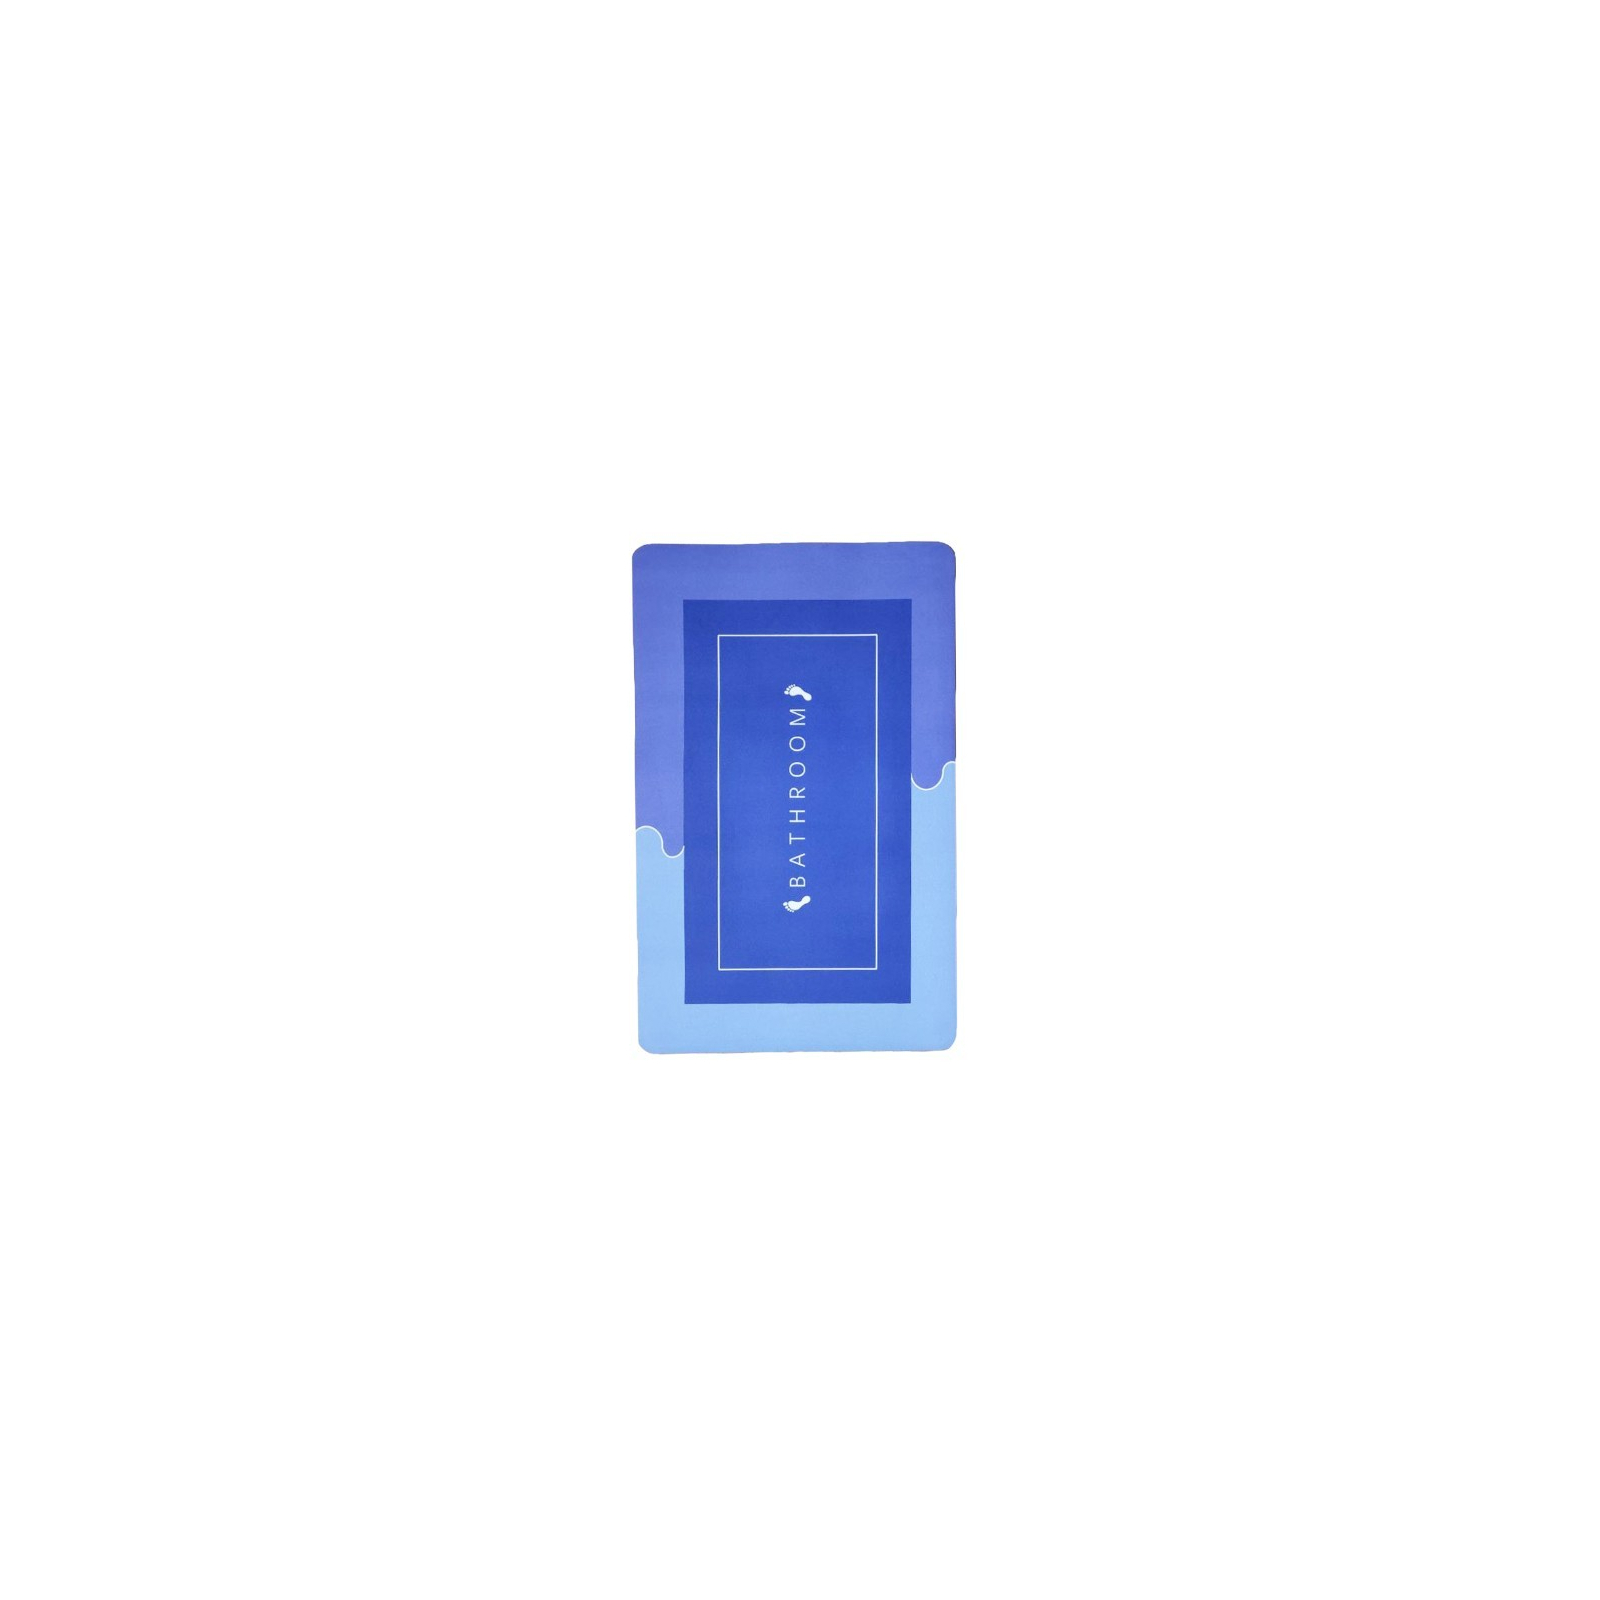 Коврик для ванной Stenson суперпоглощающий 50 х 80 см прямоугольный фиолетово-синий (R30938 violet-blue) изображение 2